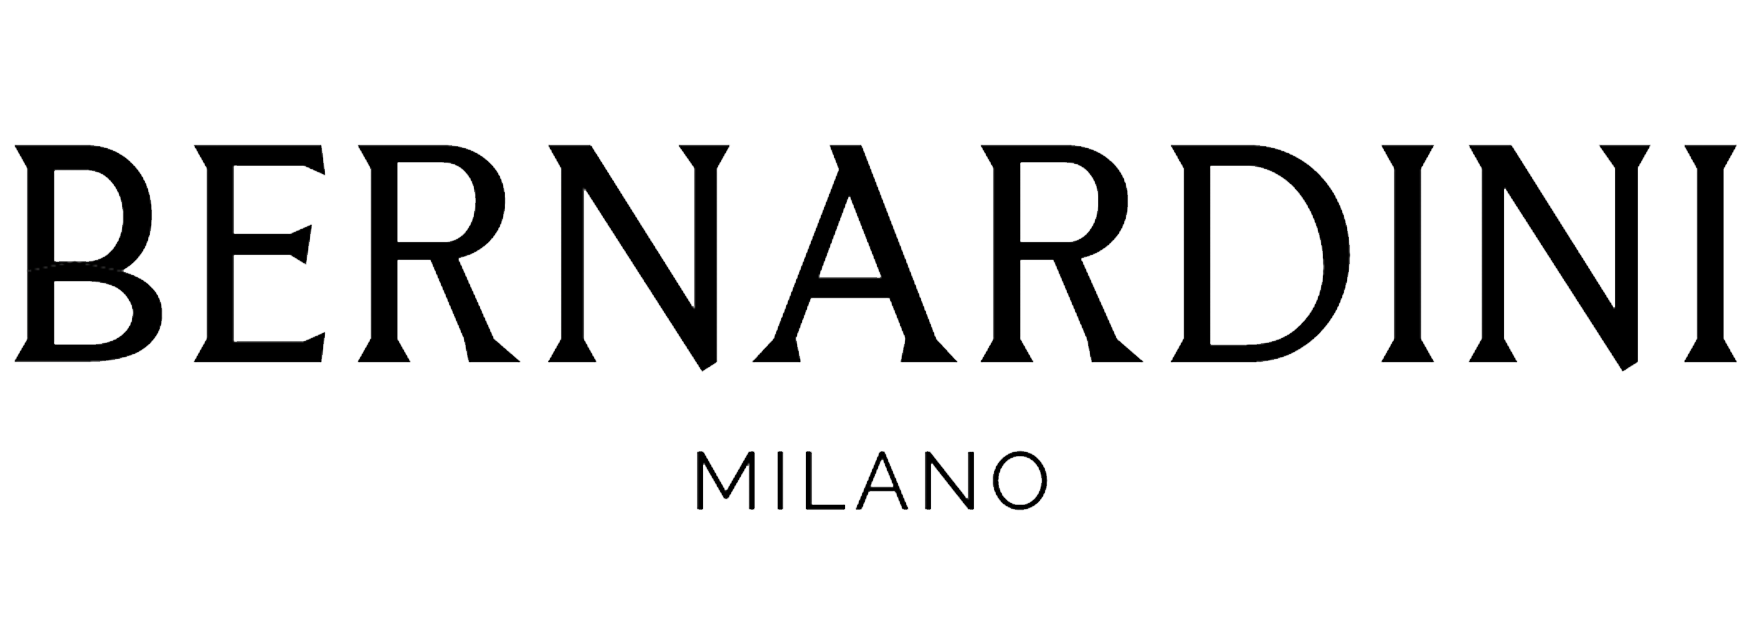 Black Bernardini Milano logo